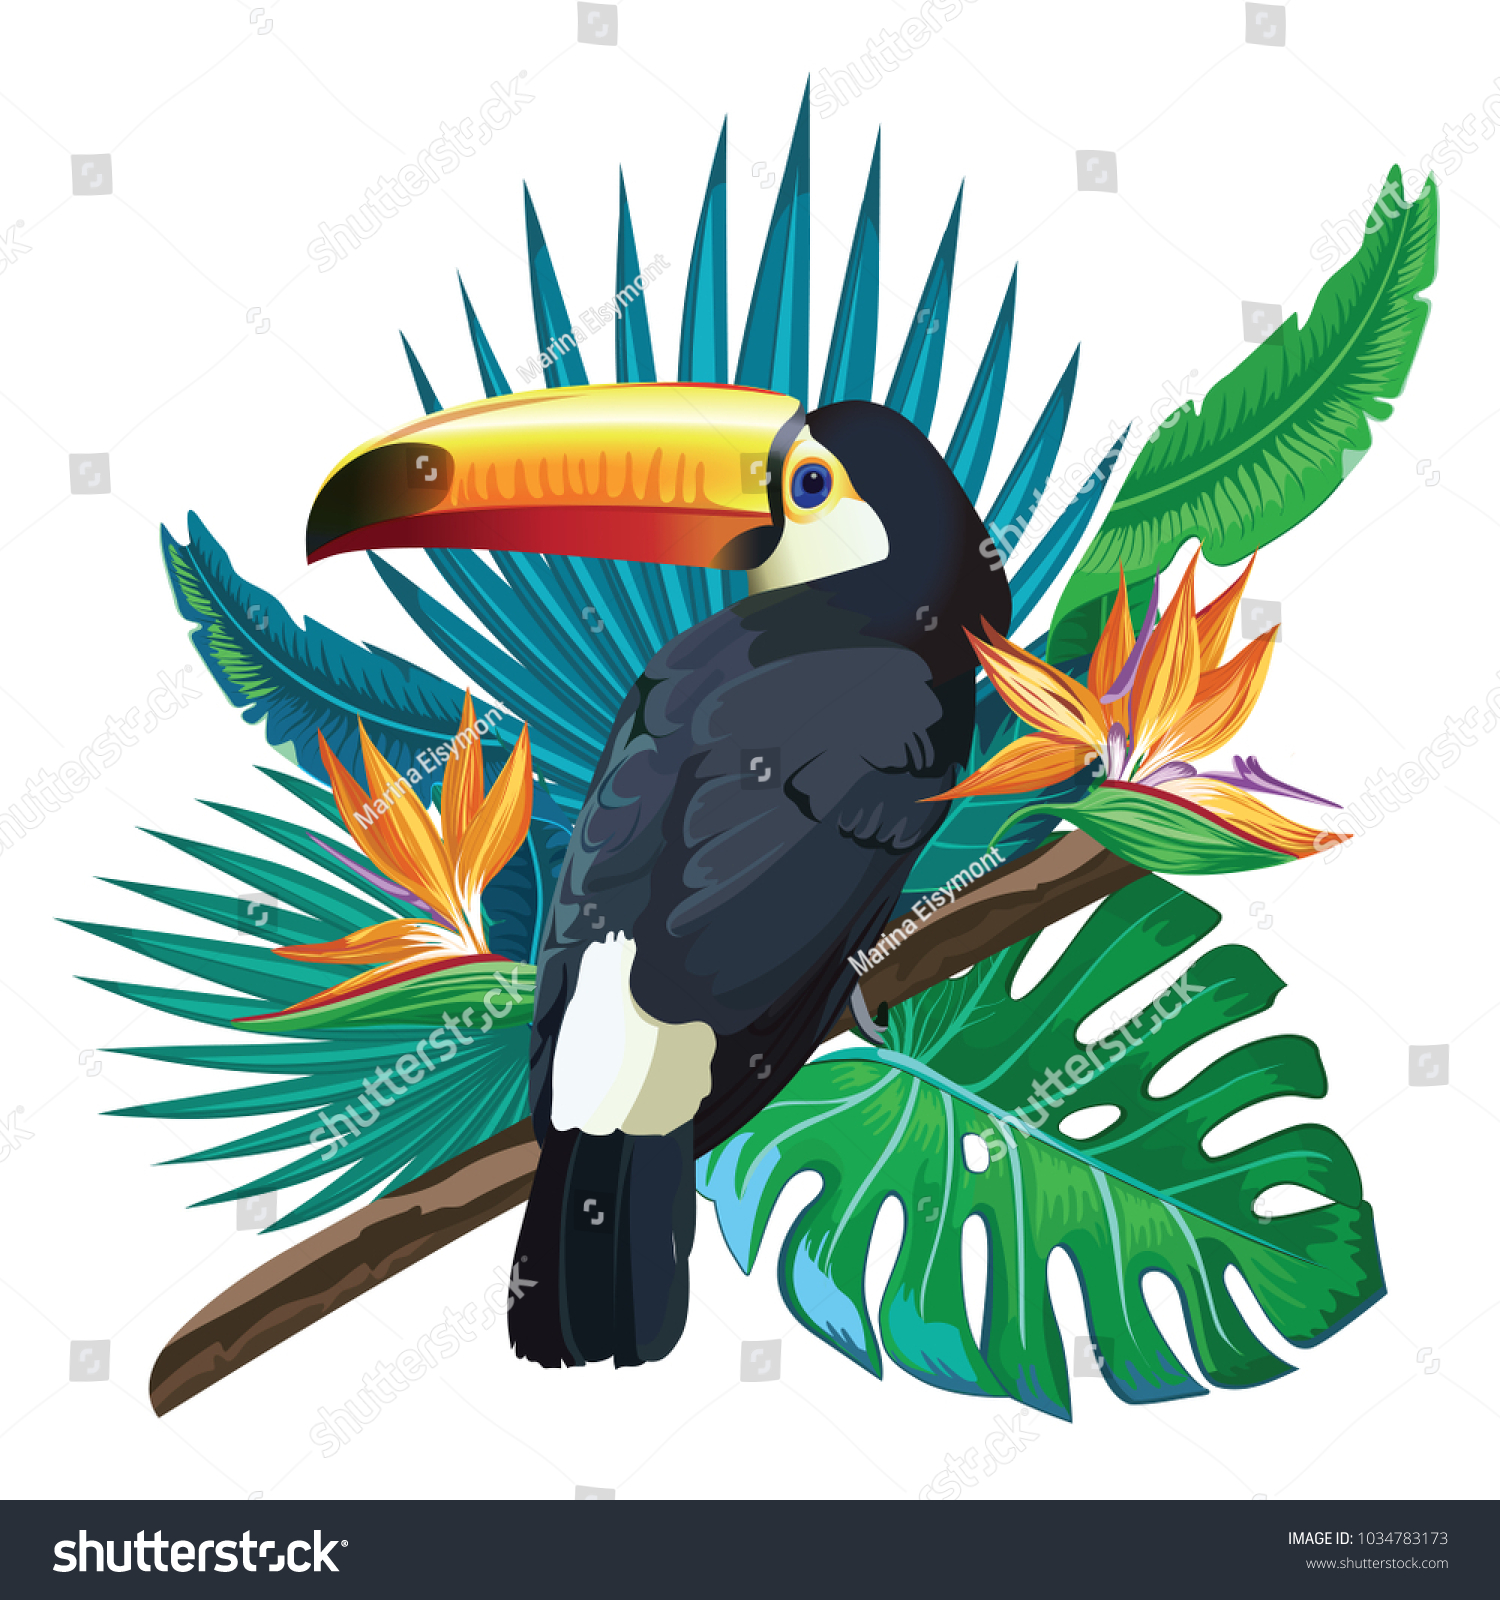 Tropical Bird in Tree vector